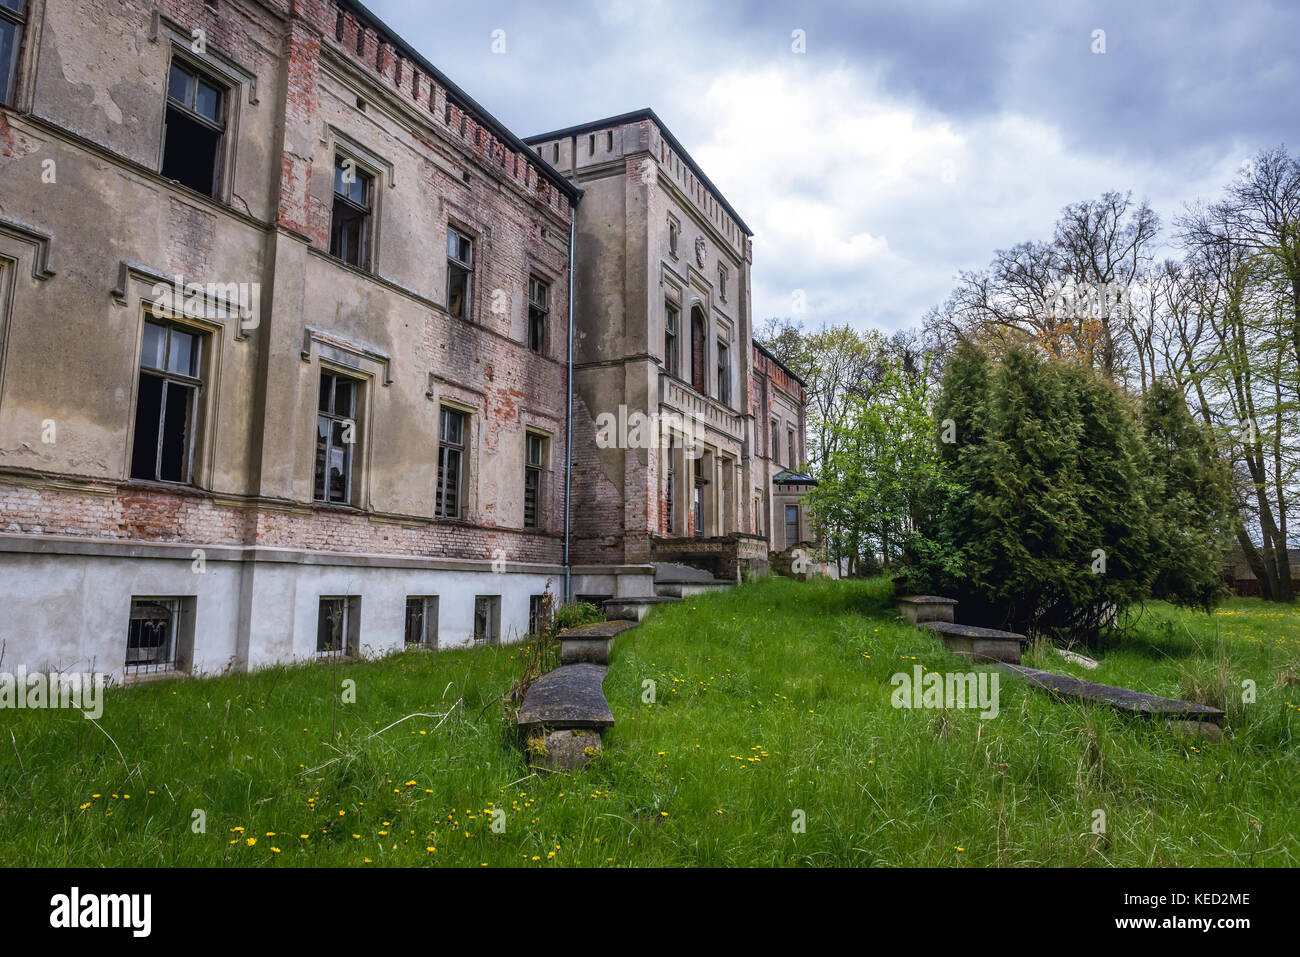 Abandoned Gothic Revival palace in Drezewo village in West Pomeranian Voivodeship of Poland Stock Photo